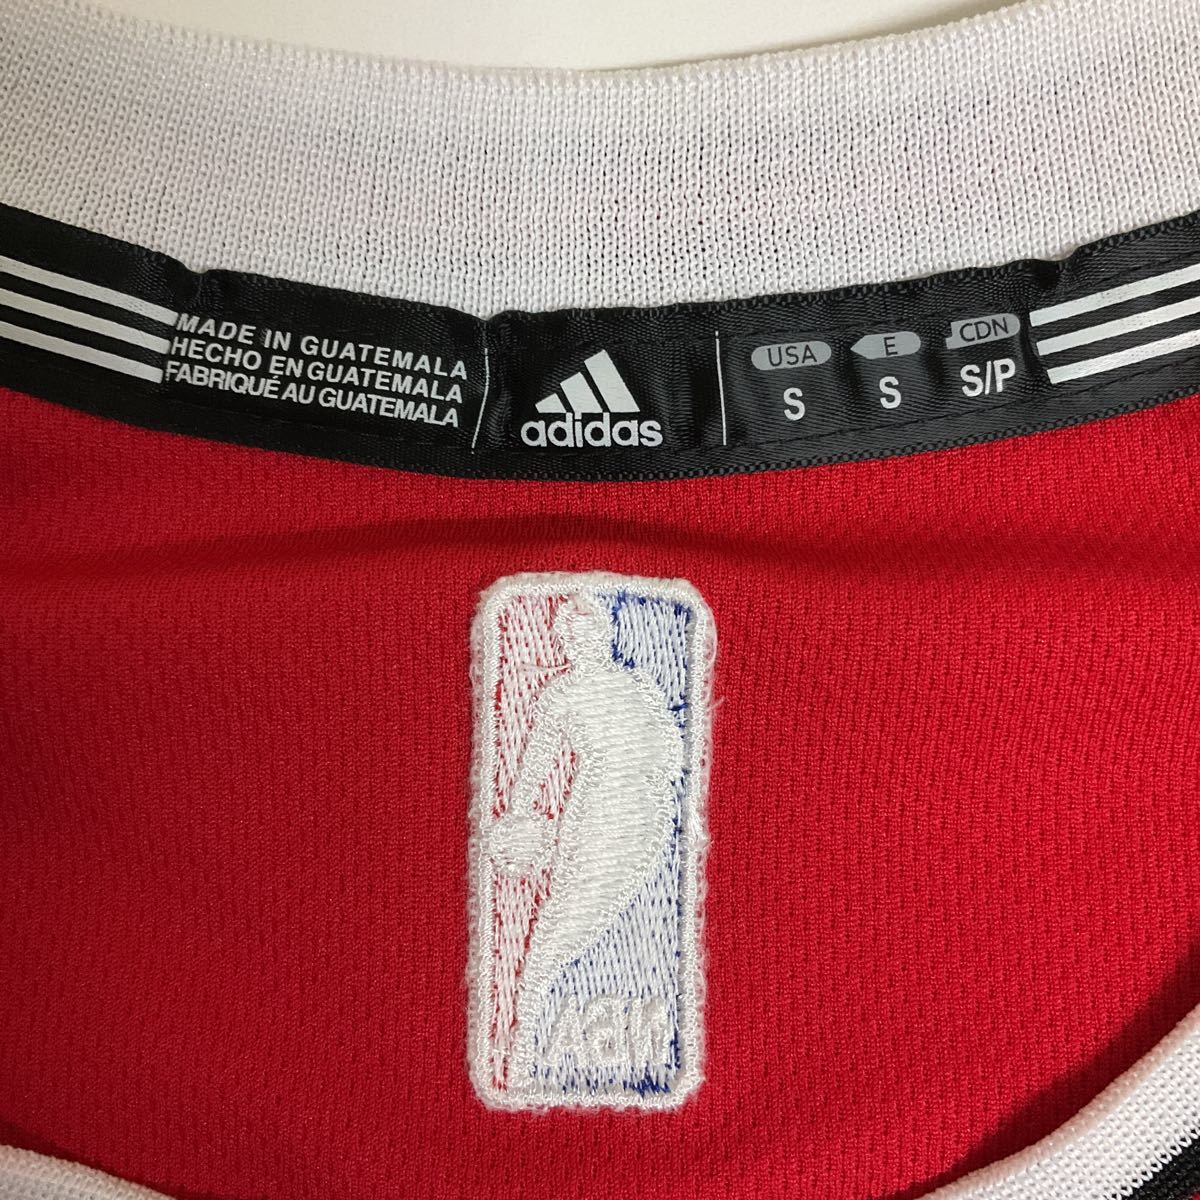 NBA adidas BULLS バスケットボール ユニフォーム ゲームシャツ NBAユニフォーム NOAH 13 古着 S